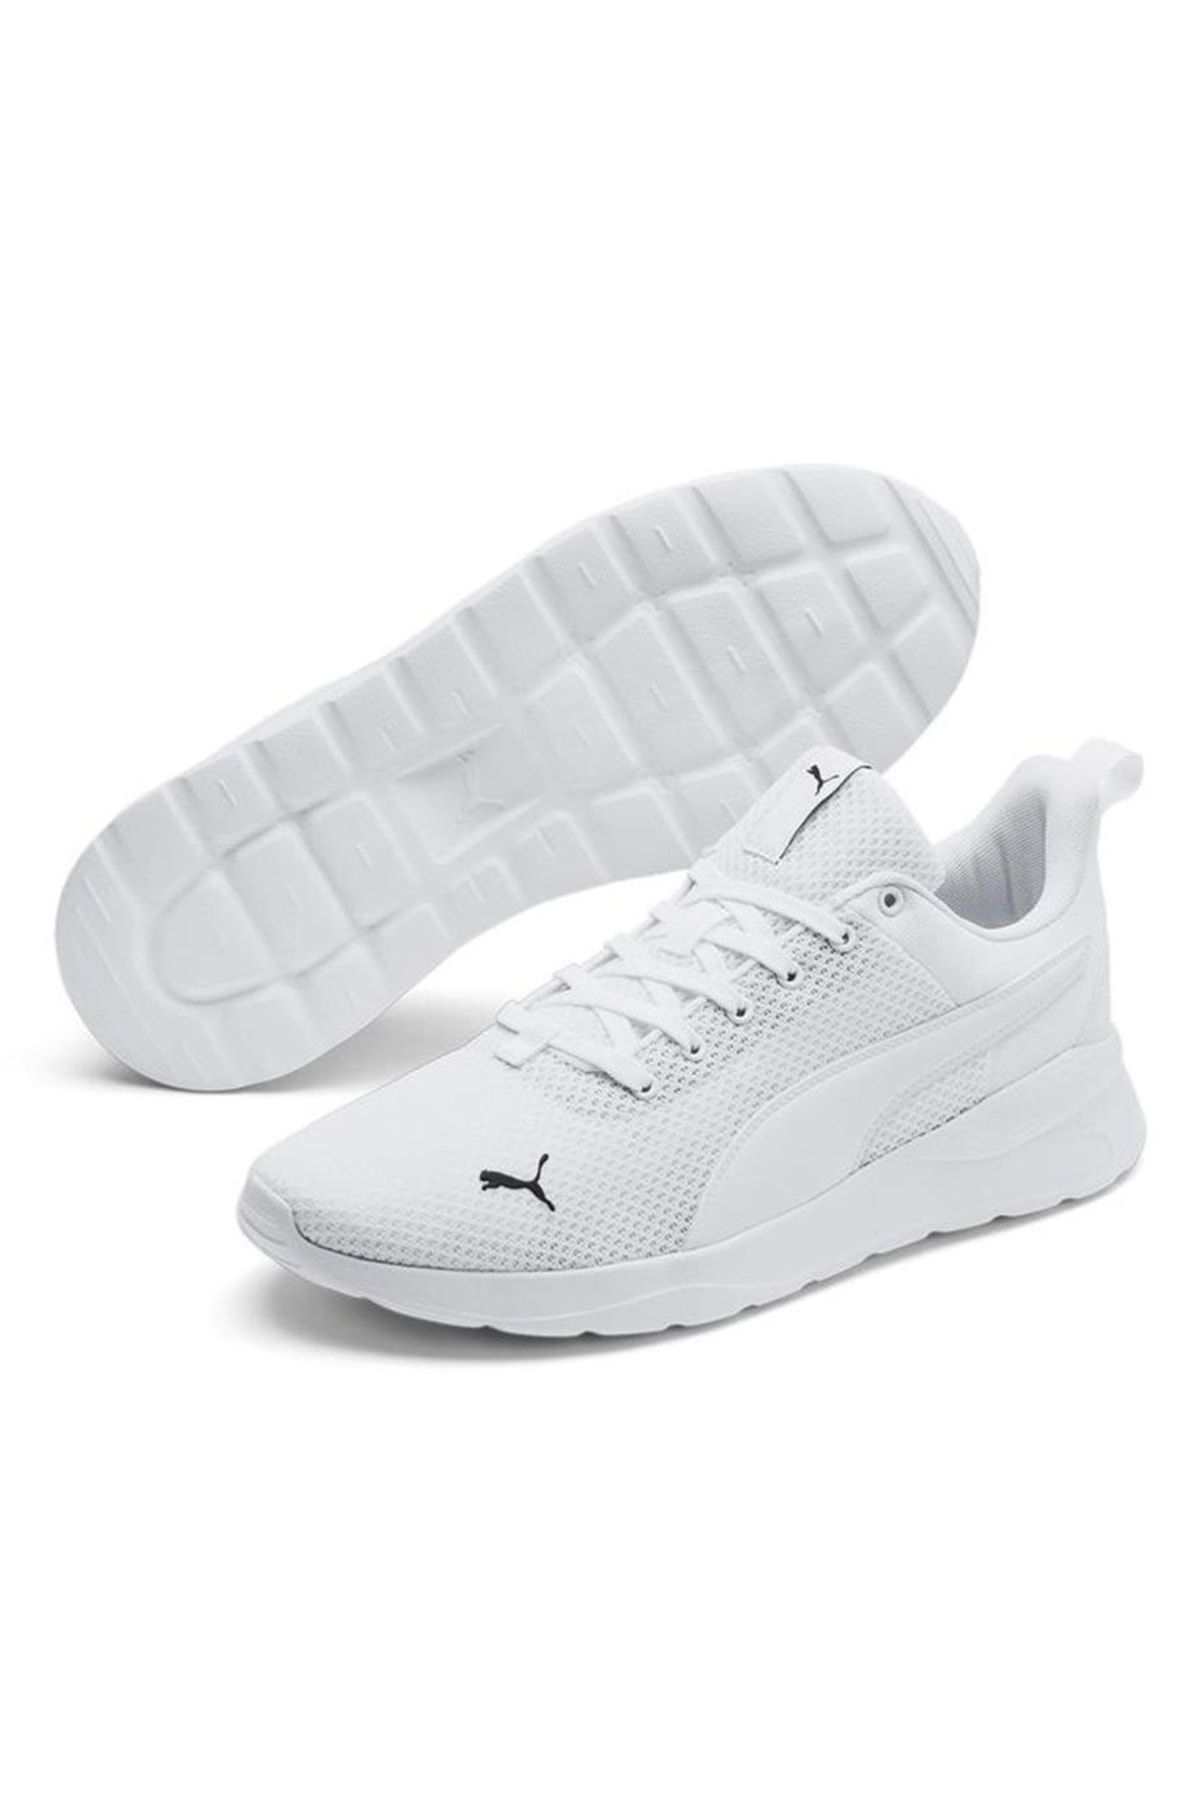 Puma Anzarun Lite Unisex Spor Ayakkabı Beyaz